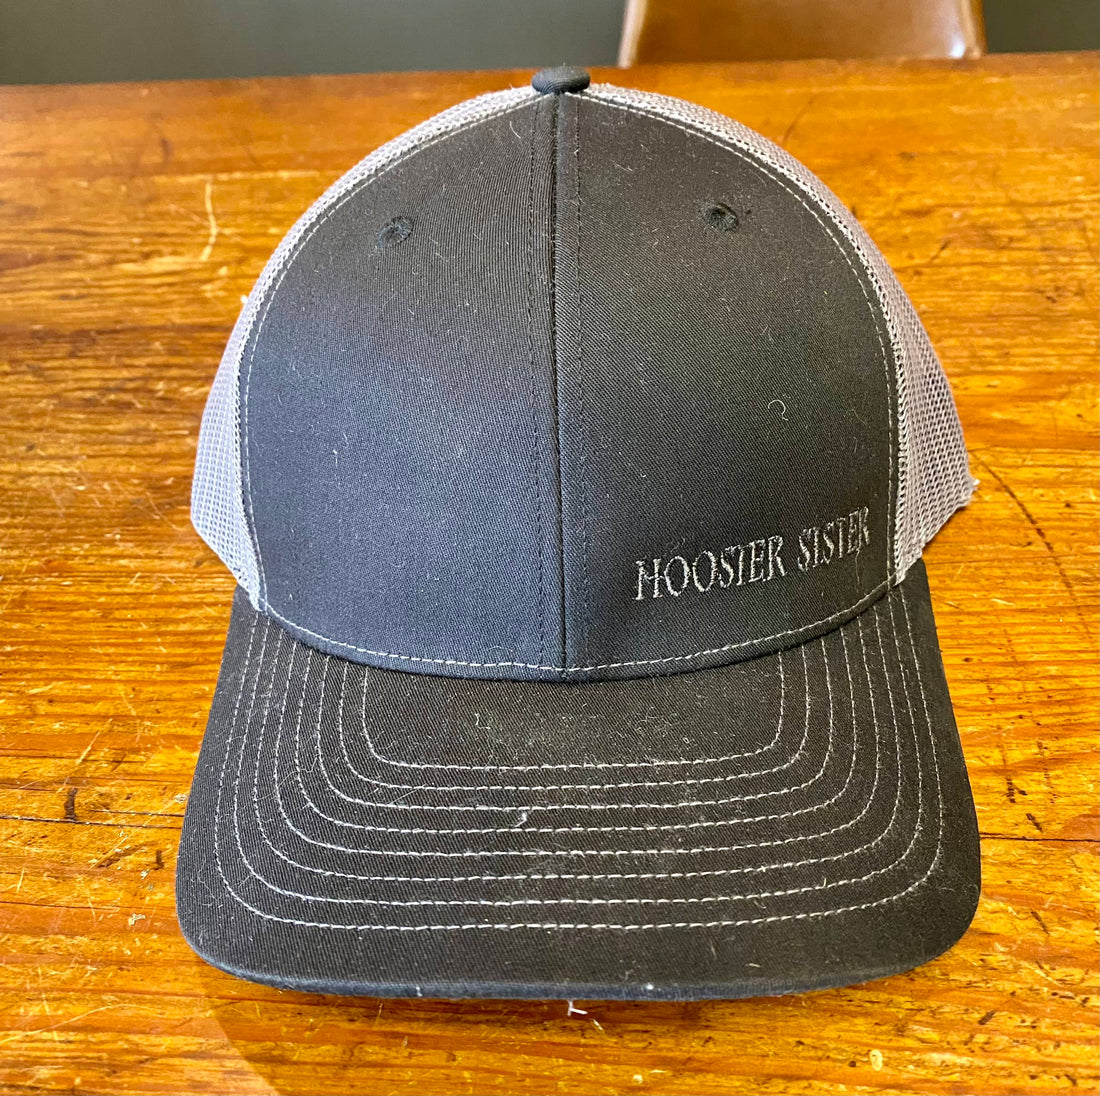 Hoosier Sister Hat - Black